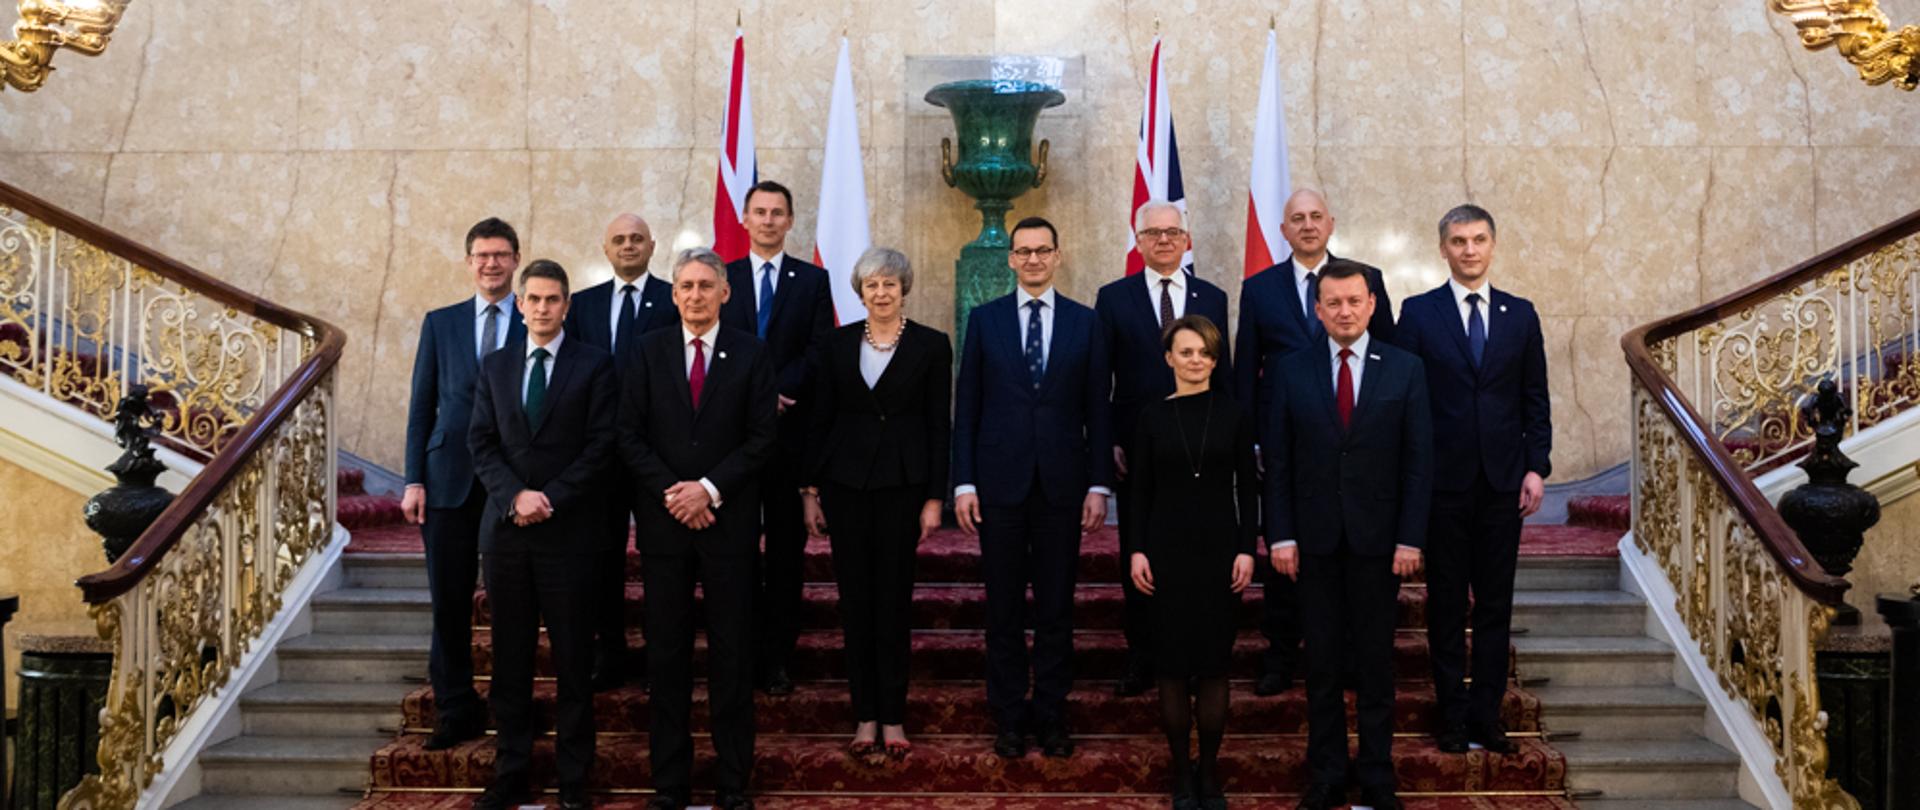 Wspólne zdjęcie na schodach premierów Polski i Wielkiej Brytanii oraz ministrów polskich i brytyjskich podczas polsko-brytyjskich konsultacji międzyrządowych w Londynie.